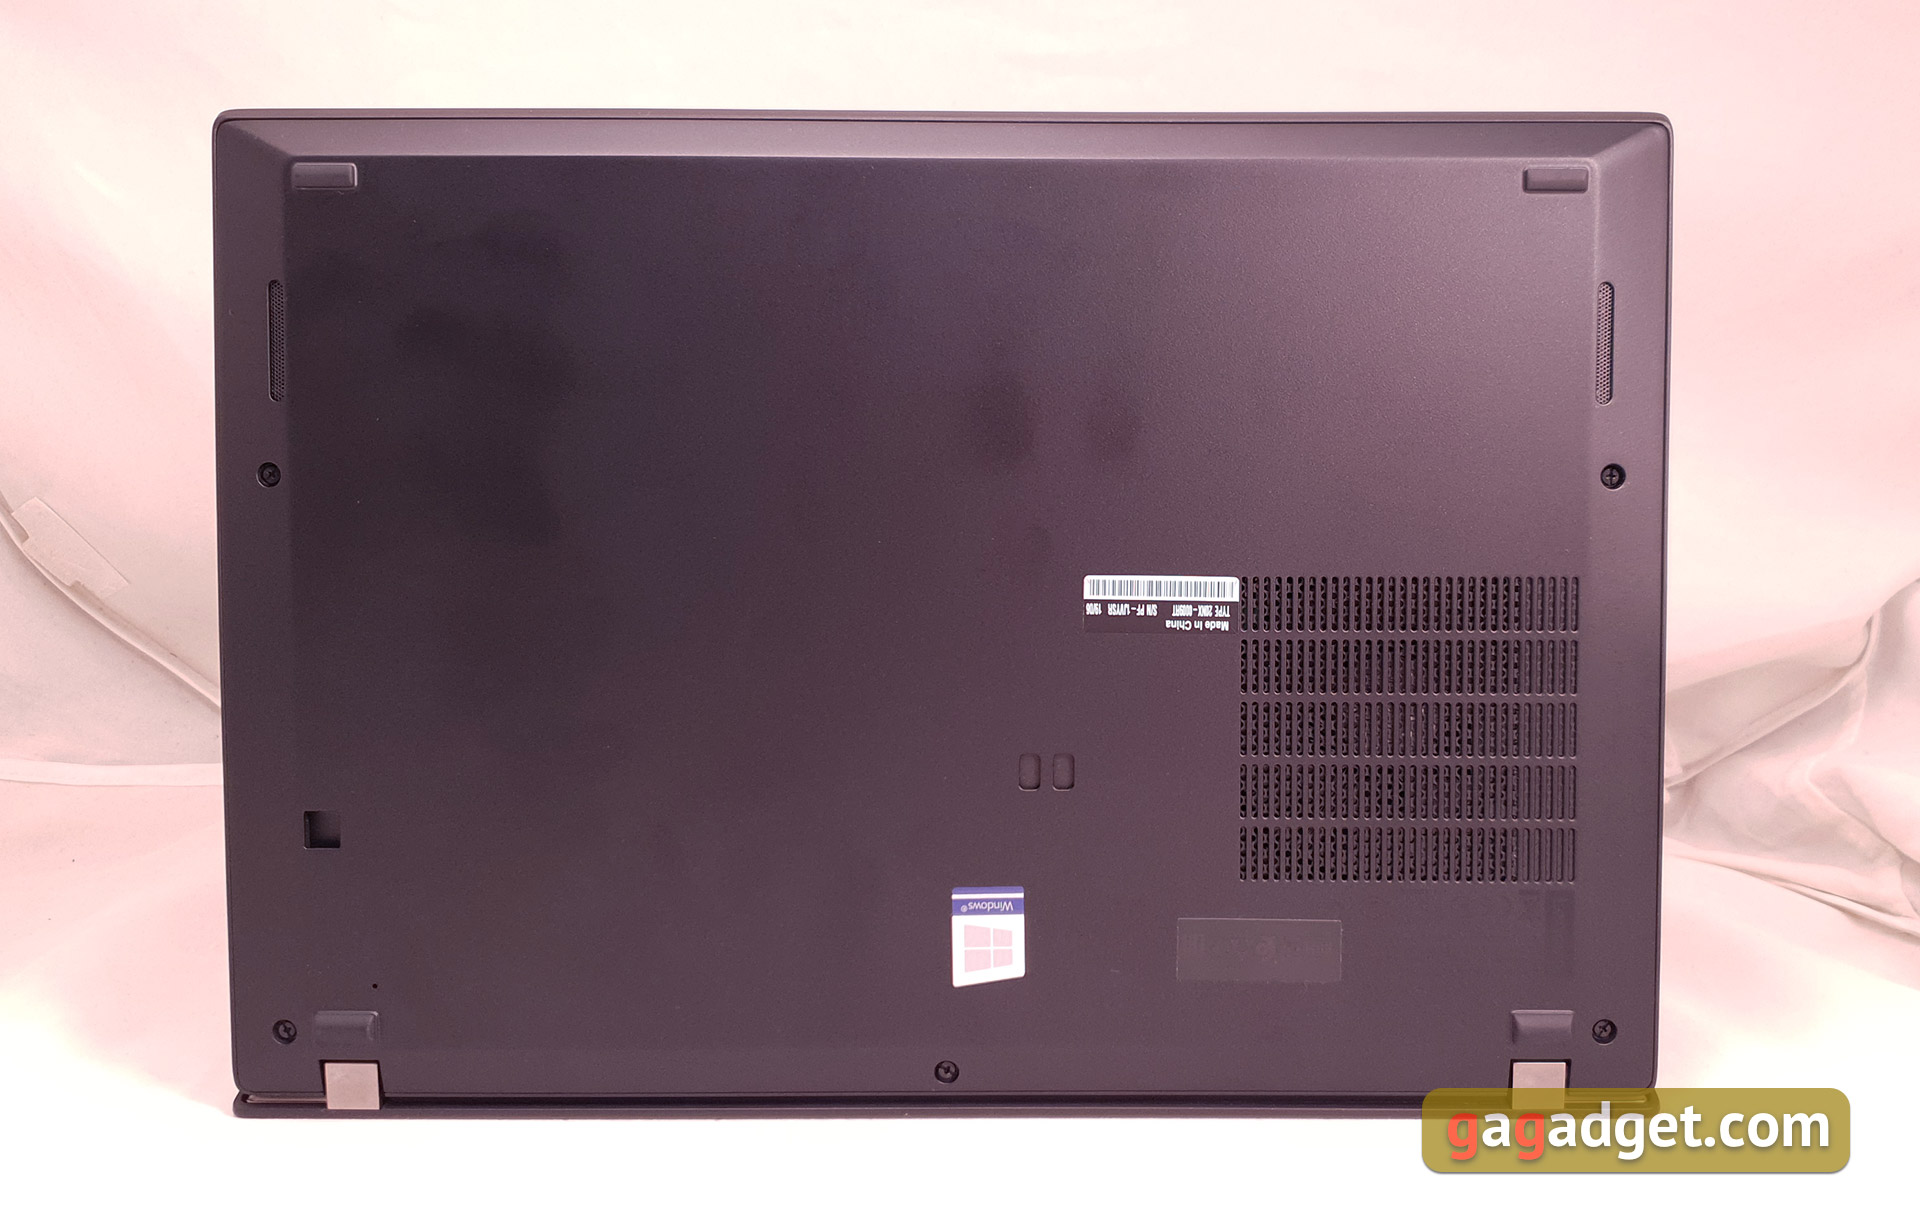 Recenzja Notebooka Lenovo ThinkPad T490s: szczery pracownik-13